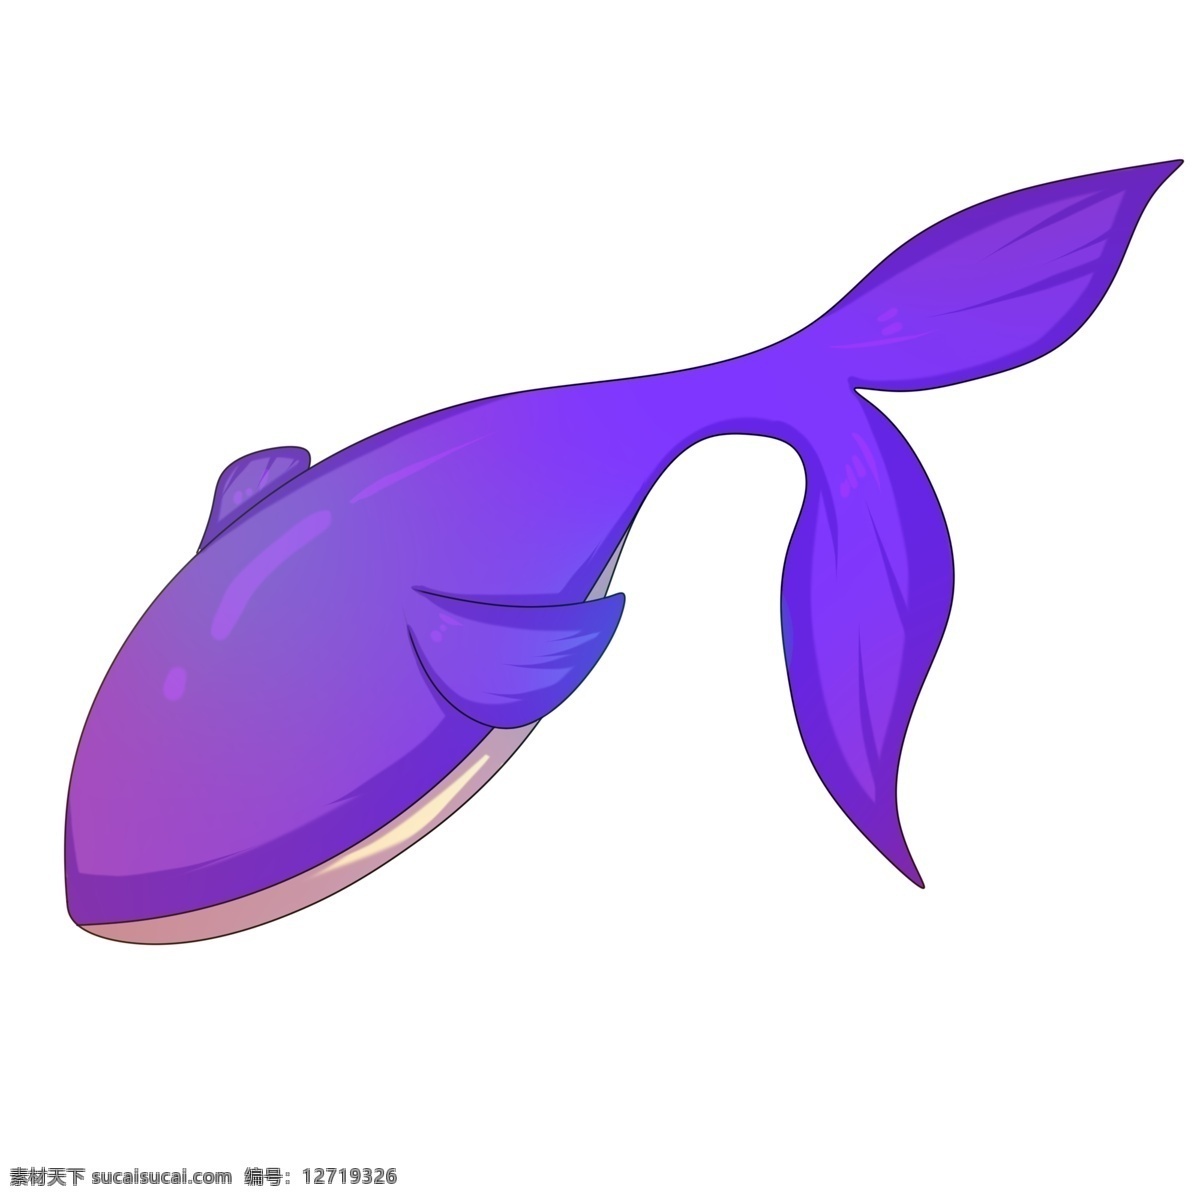 卡通 手绘 蓝色 梦幻 鲸鱼 插画 海洋 里 最大 动物 鱼形 脊椎动物 身体流线型 游泳 巨大 可爱